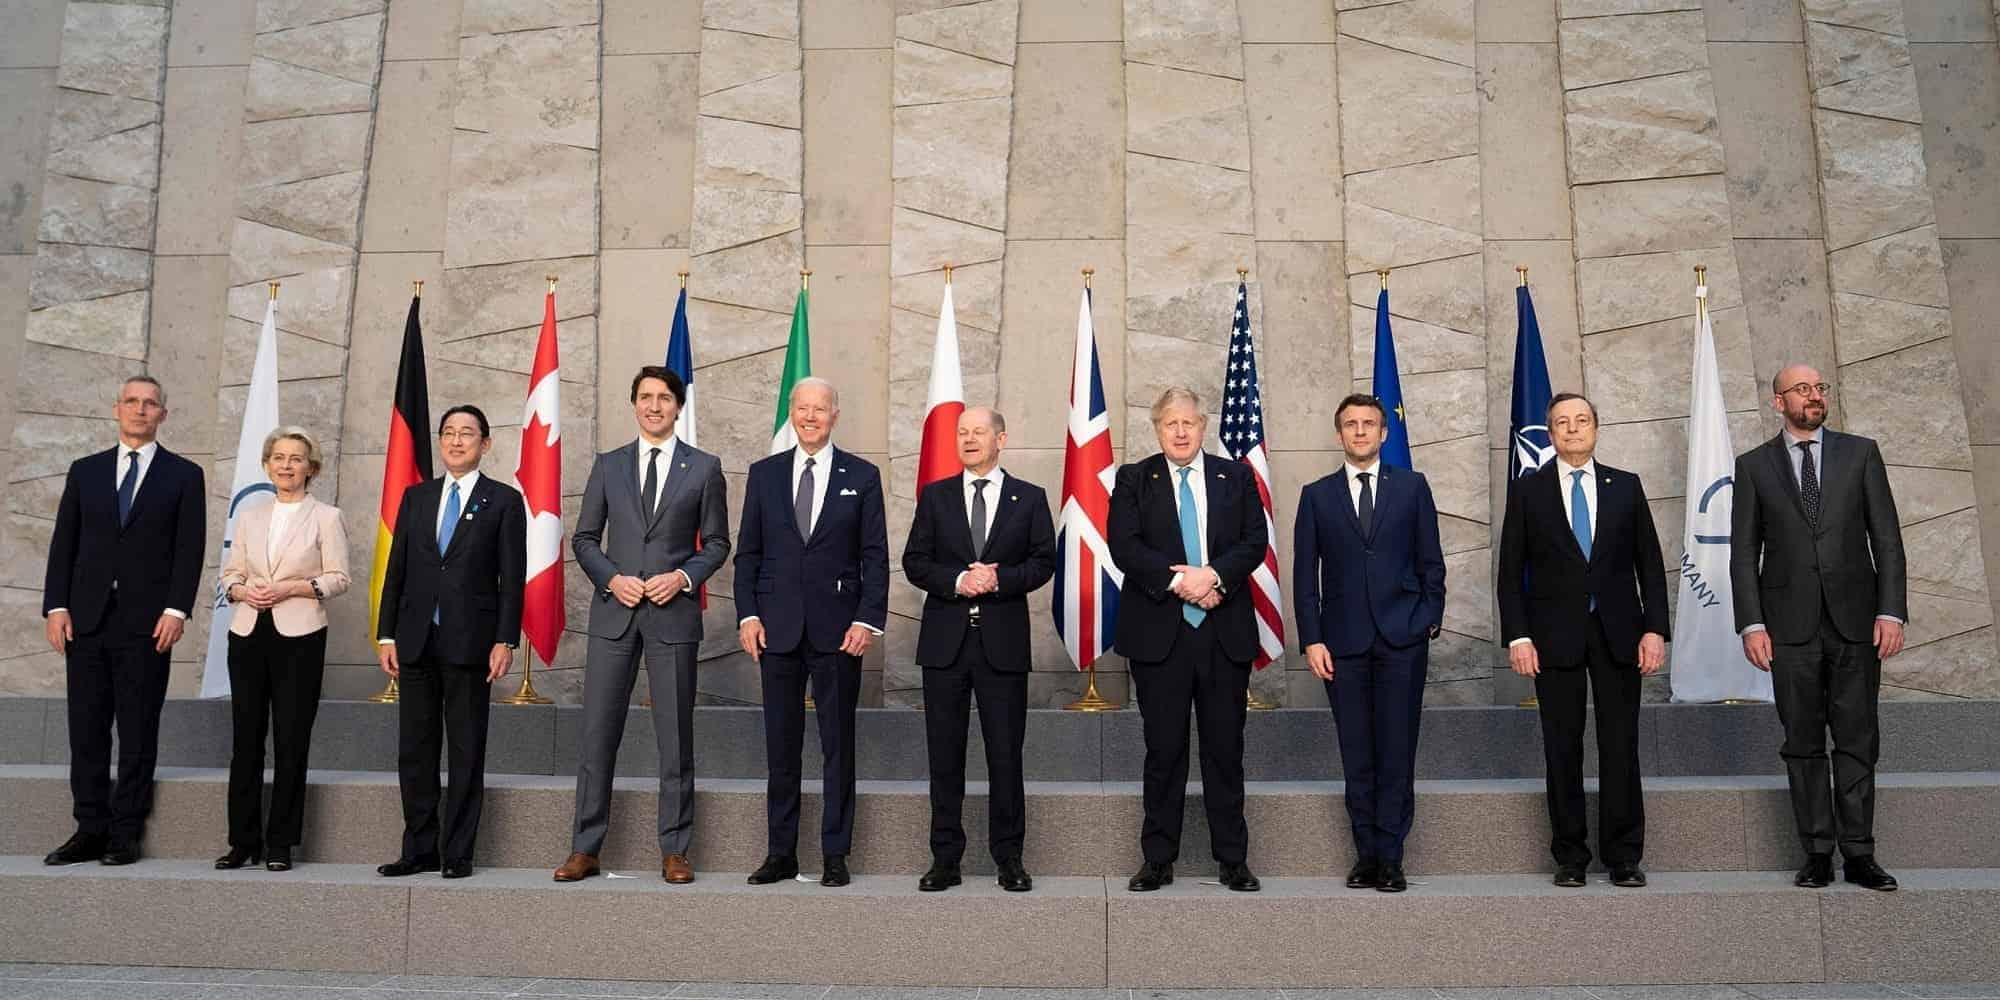 Οι αρχηγοί κρατών της G7